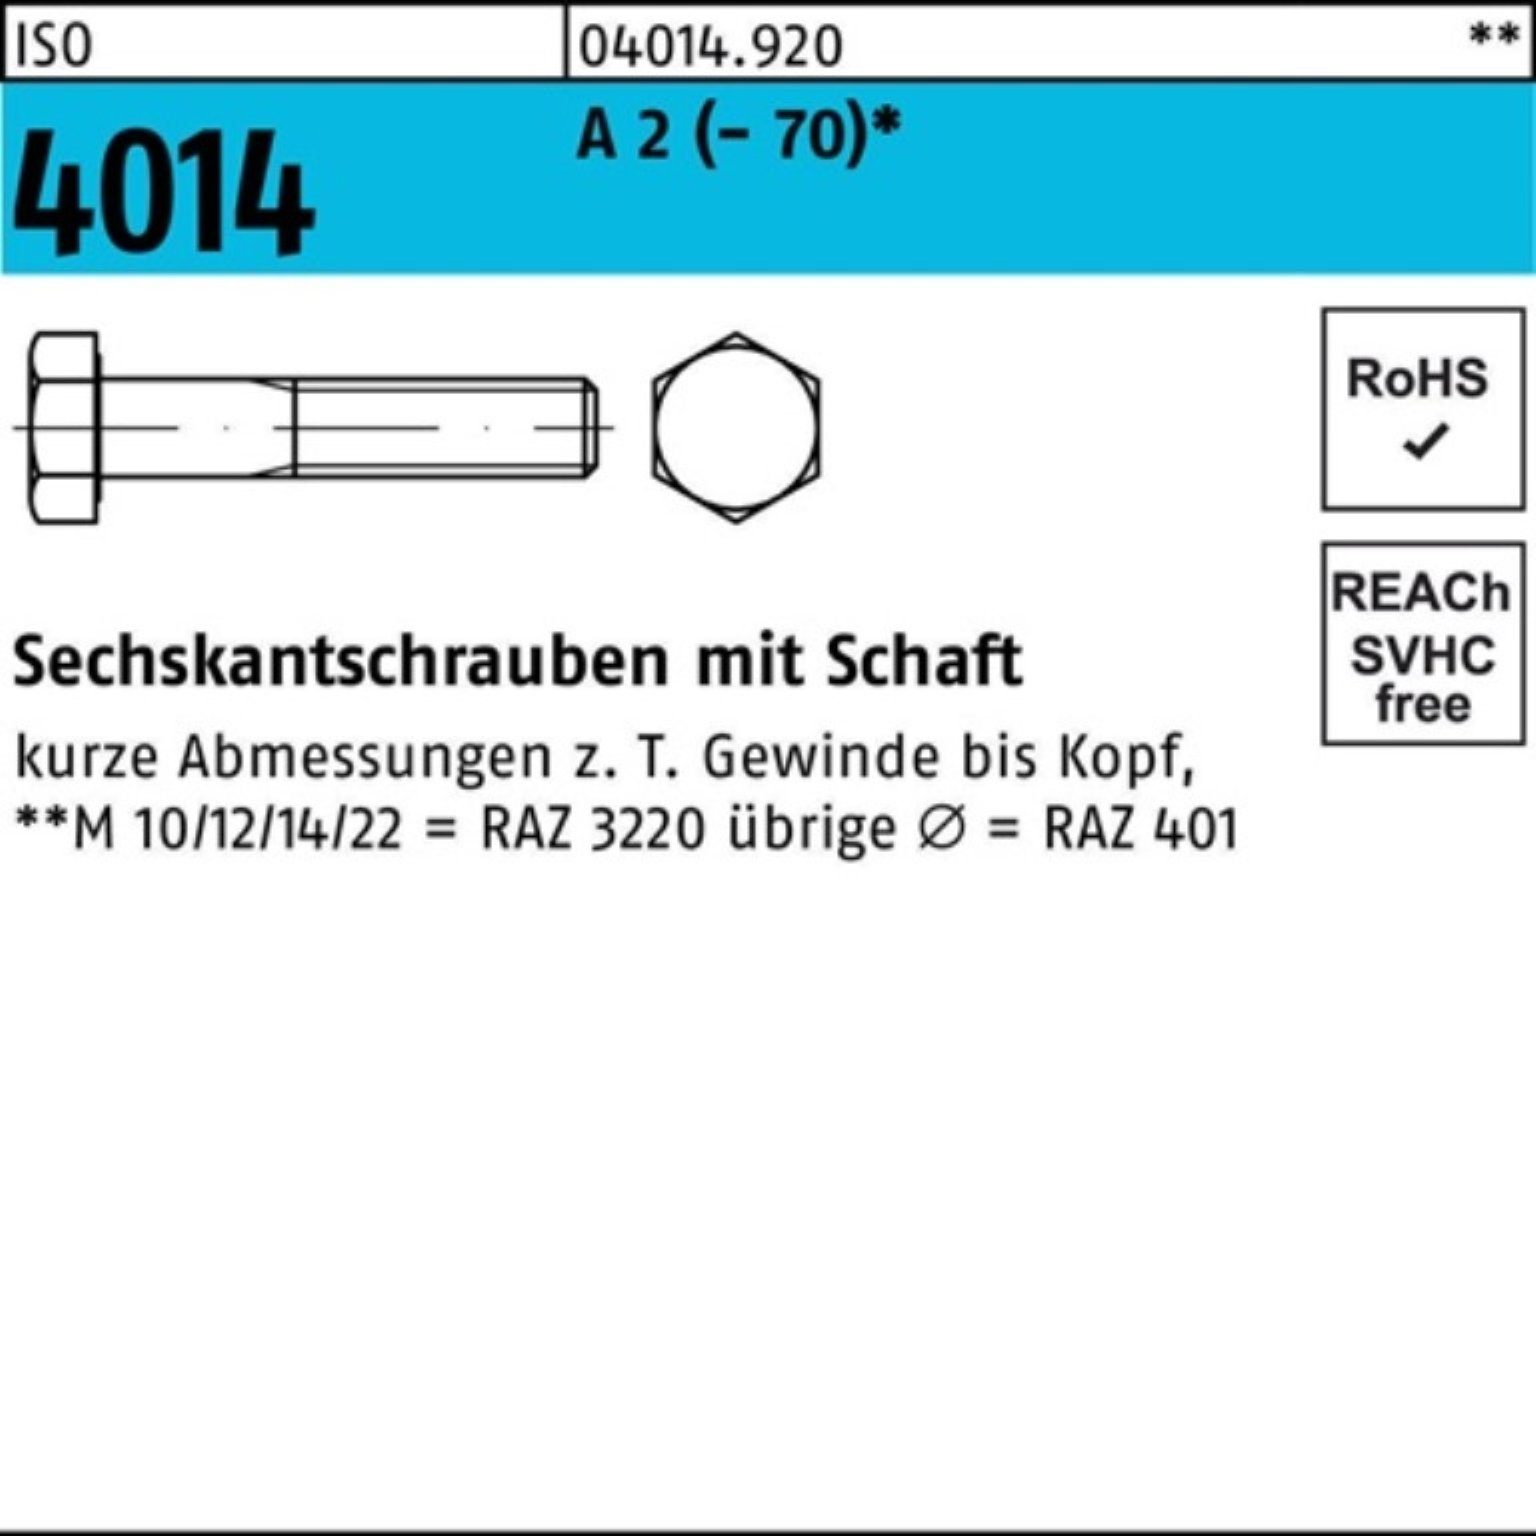 Bufab Sechskantschraube 100er Pack Sechskantschraube ISO 4014 Schaft M24x 170 A 2 (70) 1 St